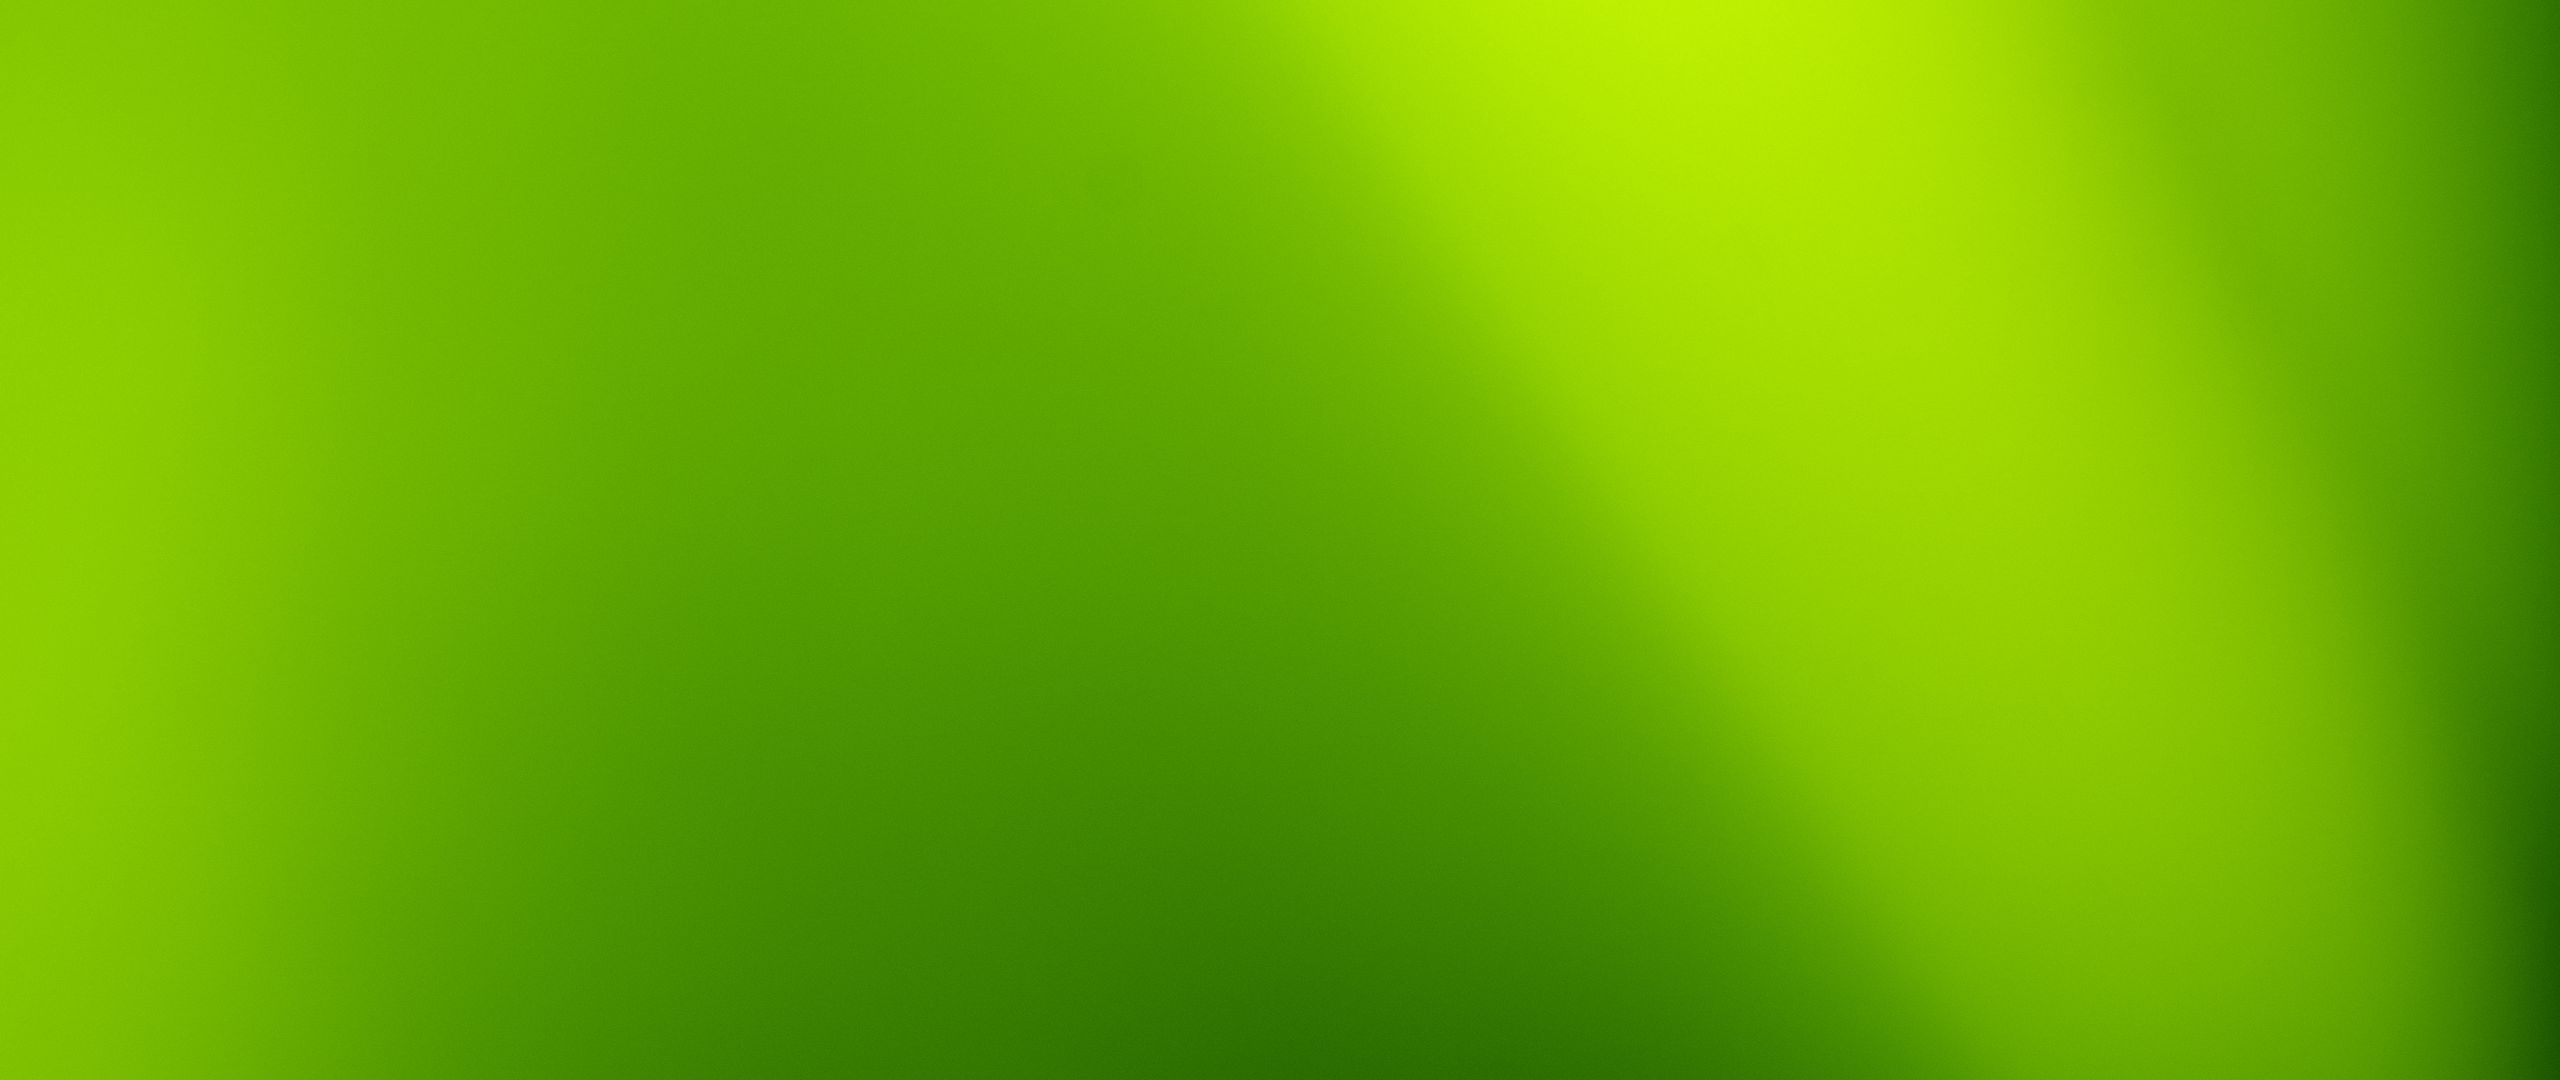 Фон зеленый градиент